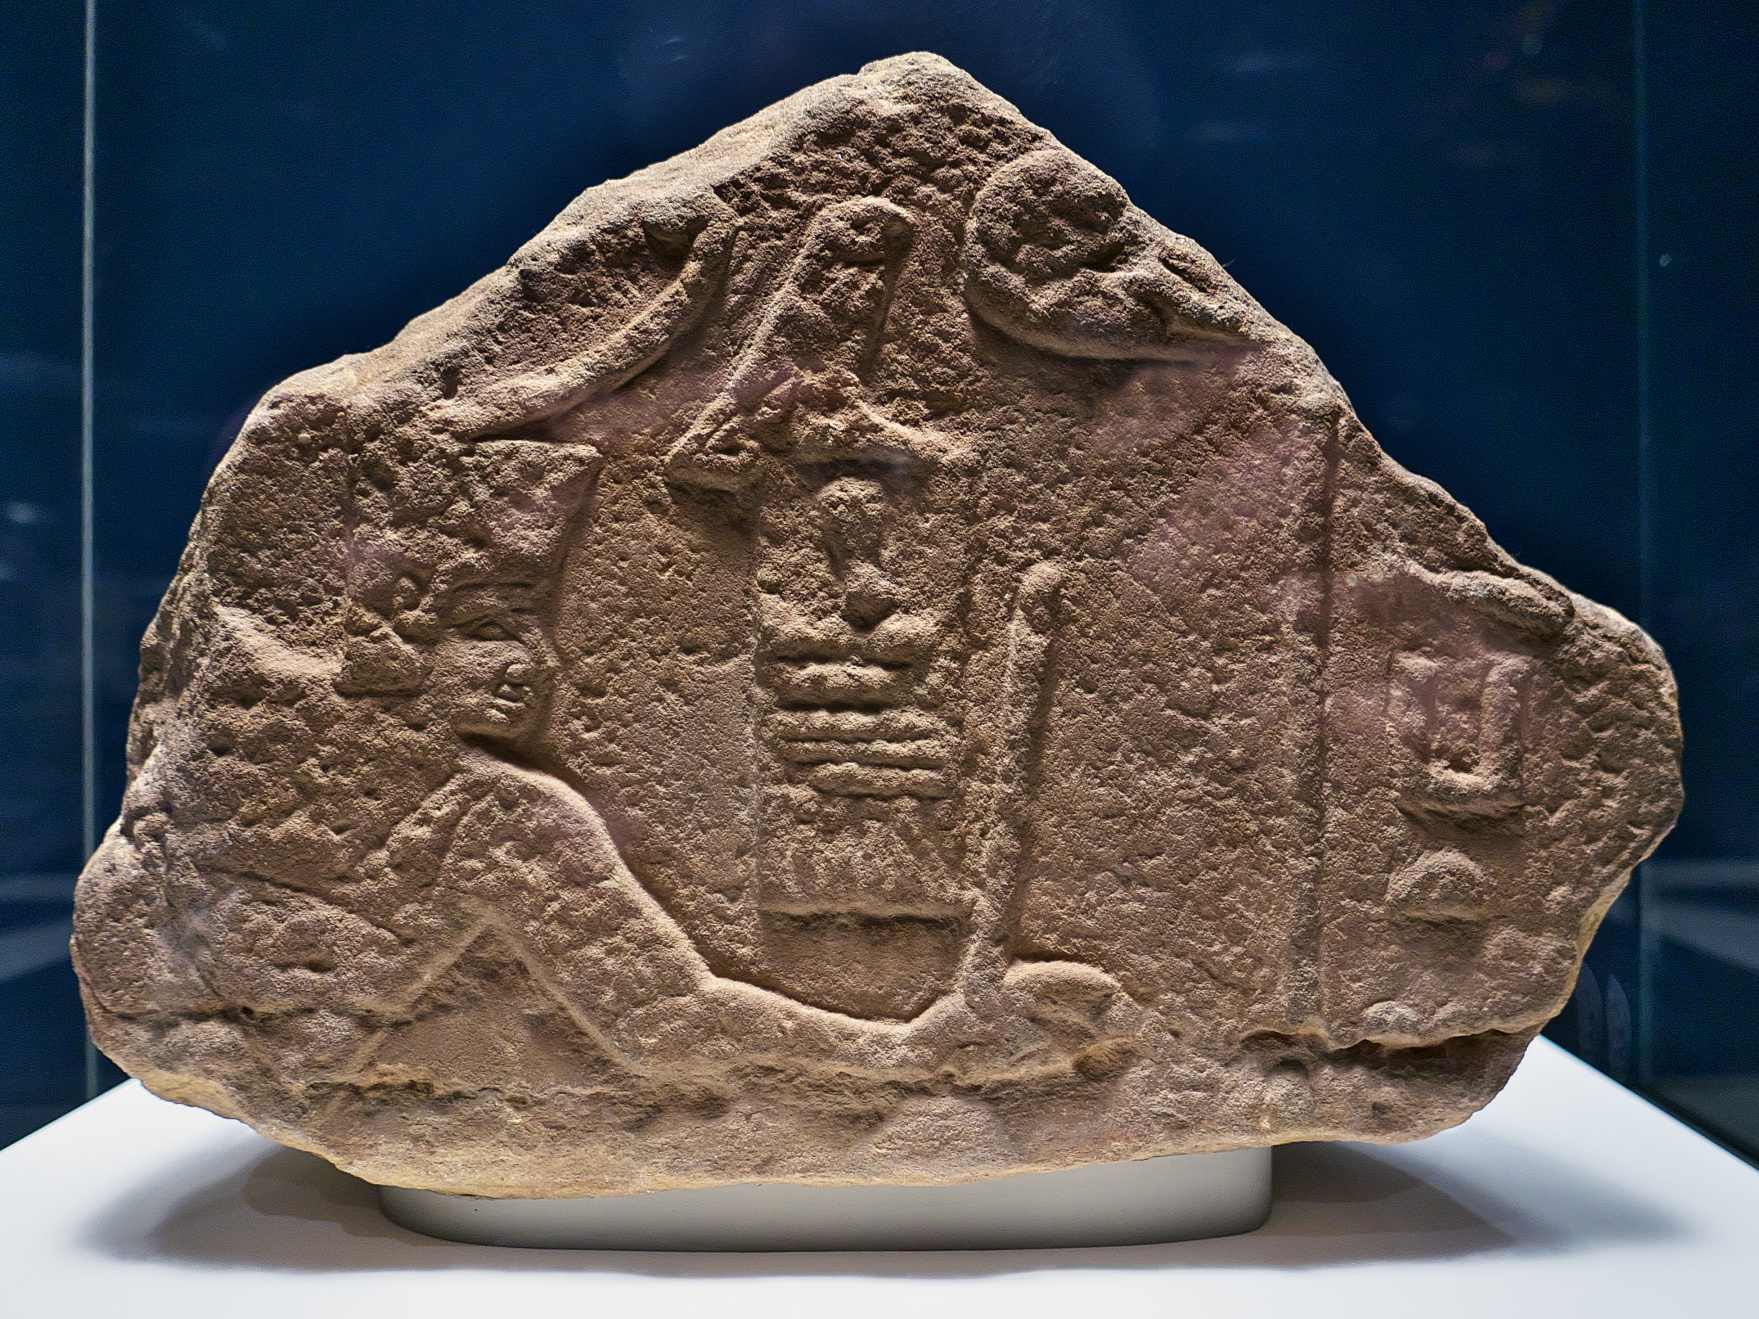 Fragment de secours de Sanakht dans la pose de frapper un ennemi. Originaire du Sinaï, aujourd'hui EA 691 exposée au British Museum.